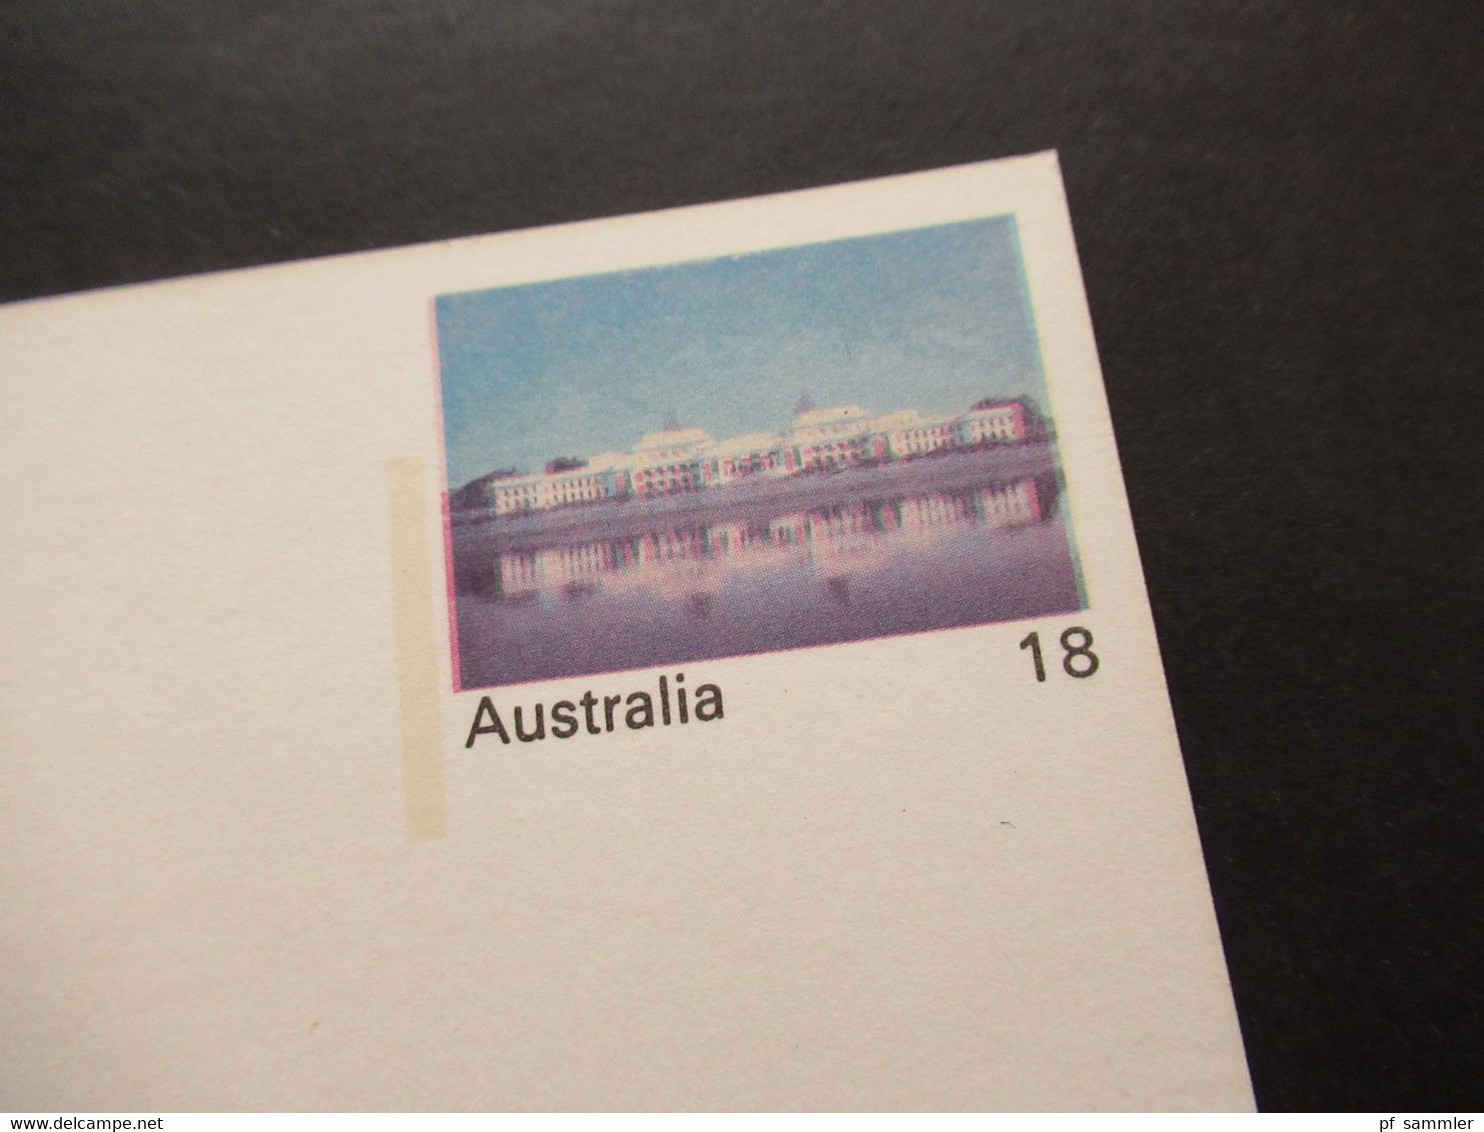 Australien 1976 Ganzsache Mit Druckfehler / Verschobener Druck! Parliament House Vievew Across Lake Burley Griffin - Lettres & Documents